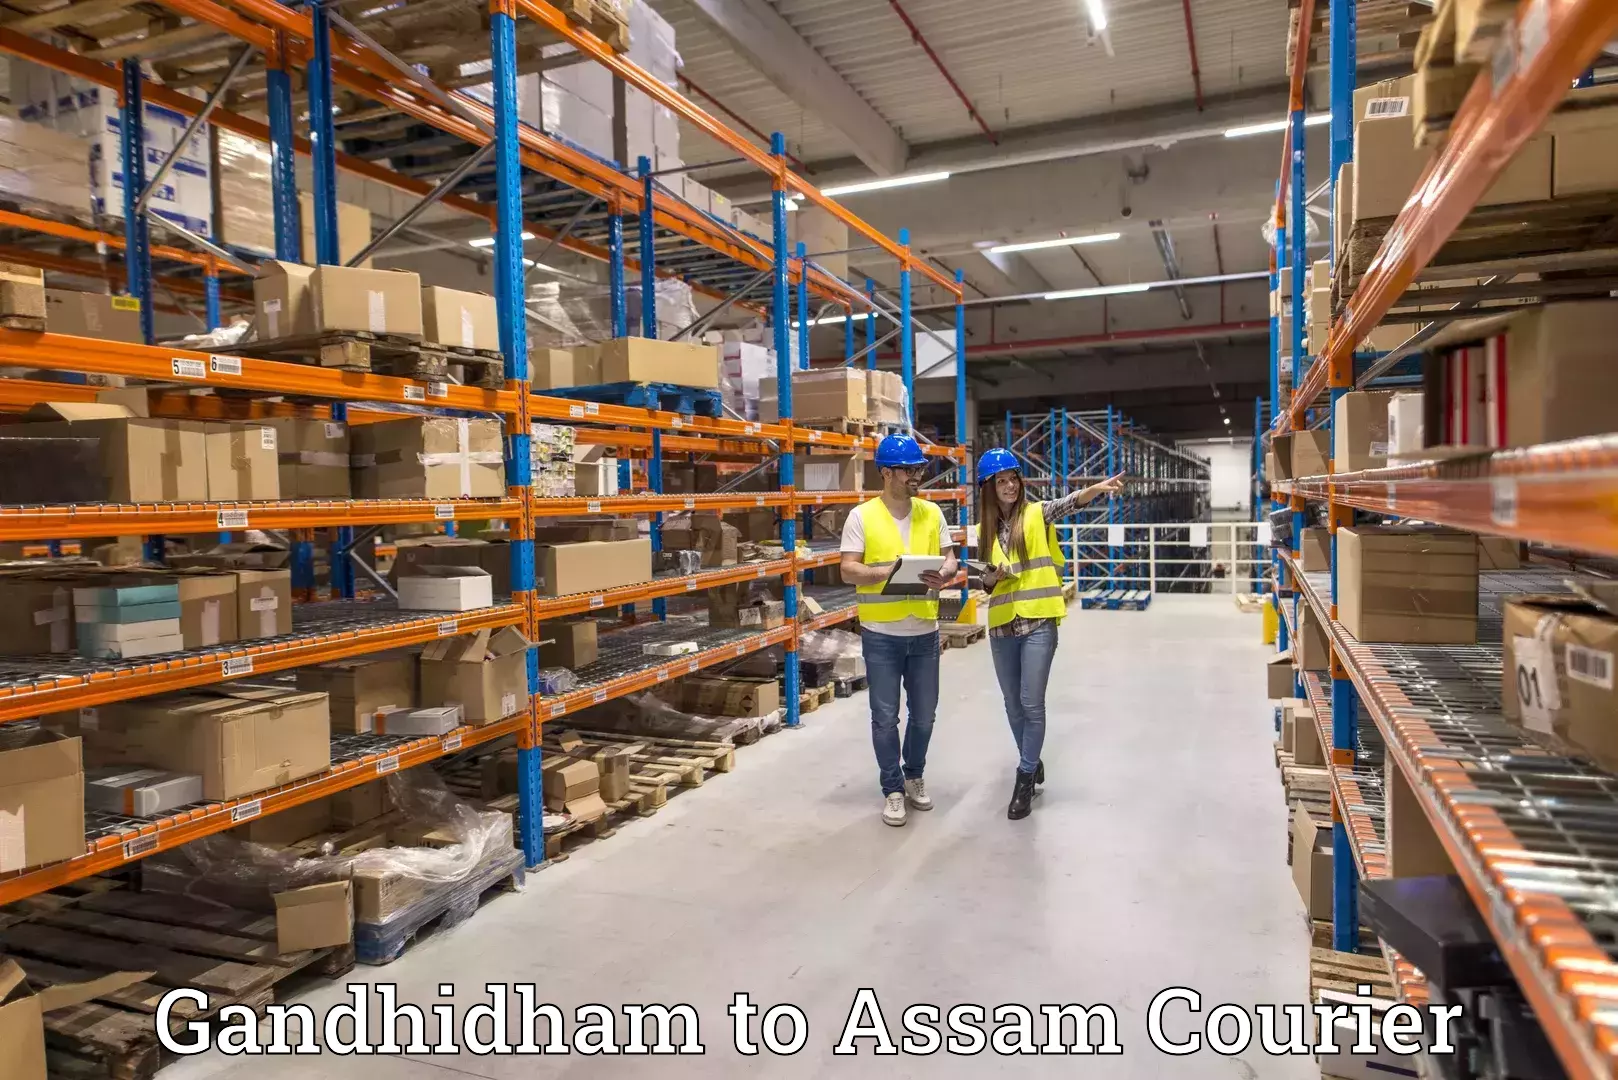 Customer-centric shipping Gandhidham to Thelamara